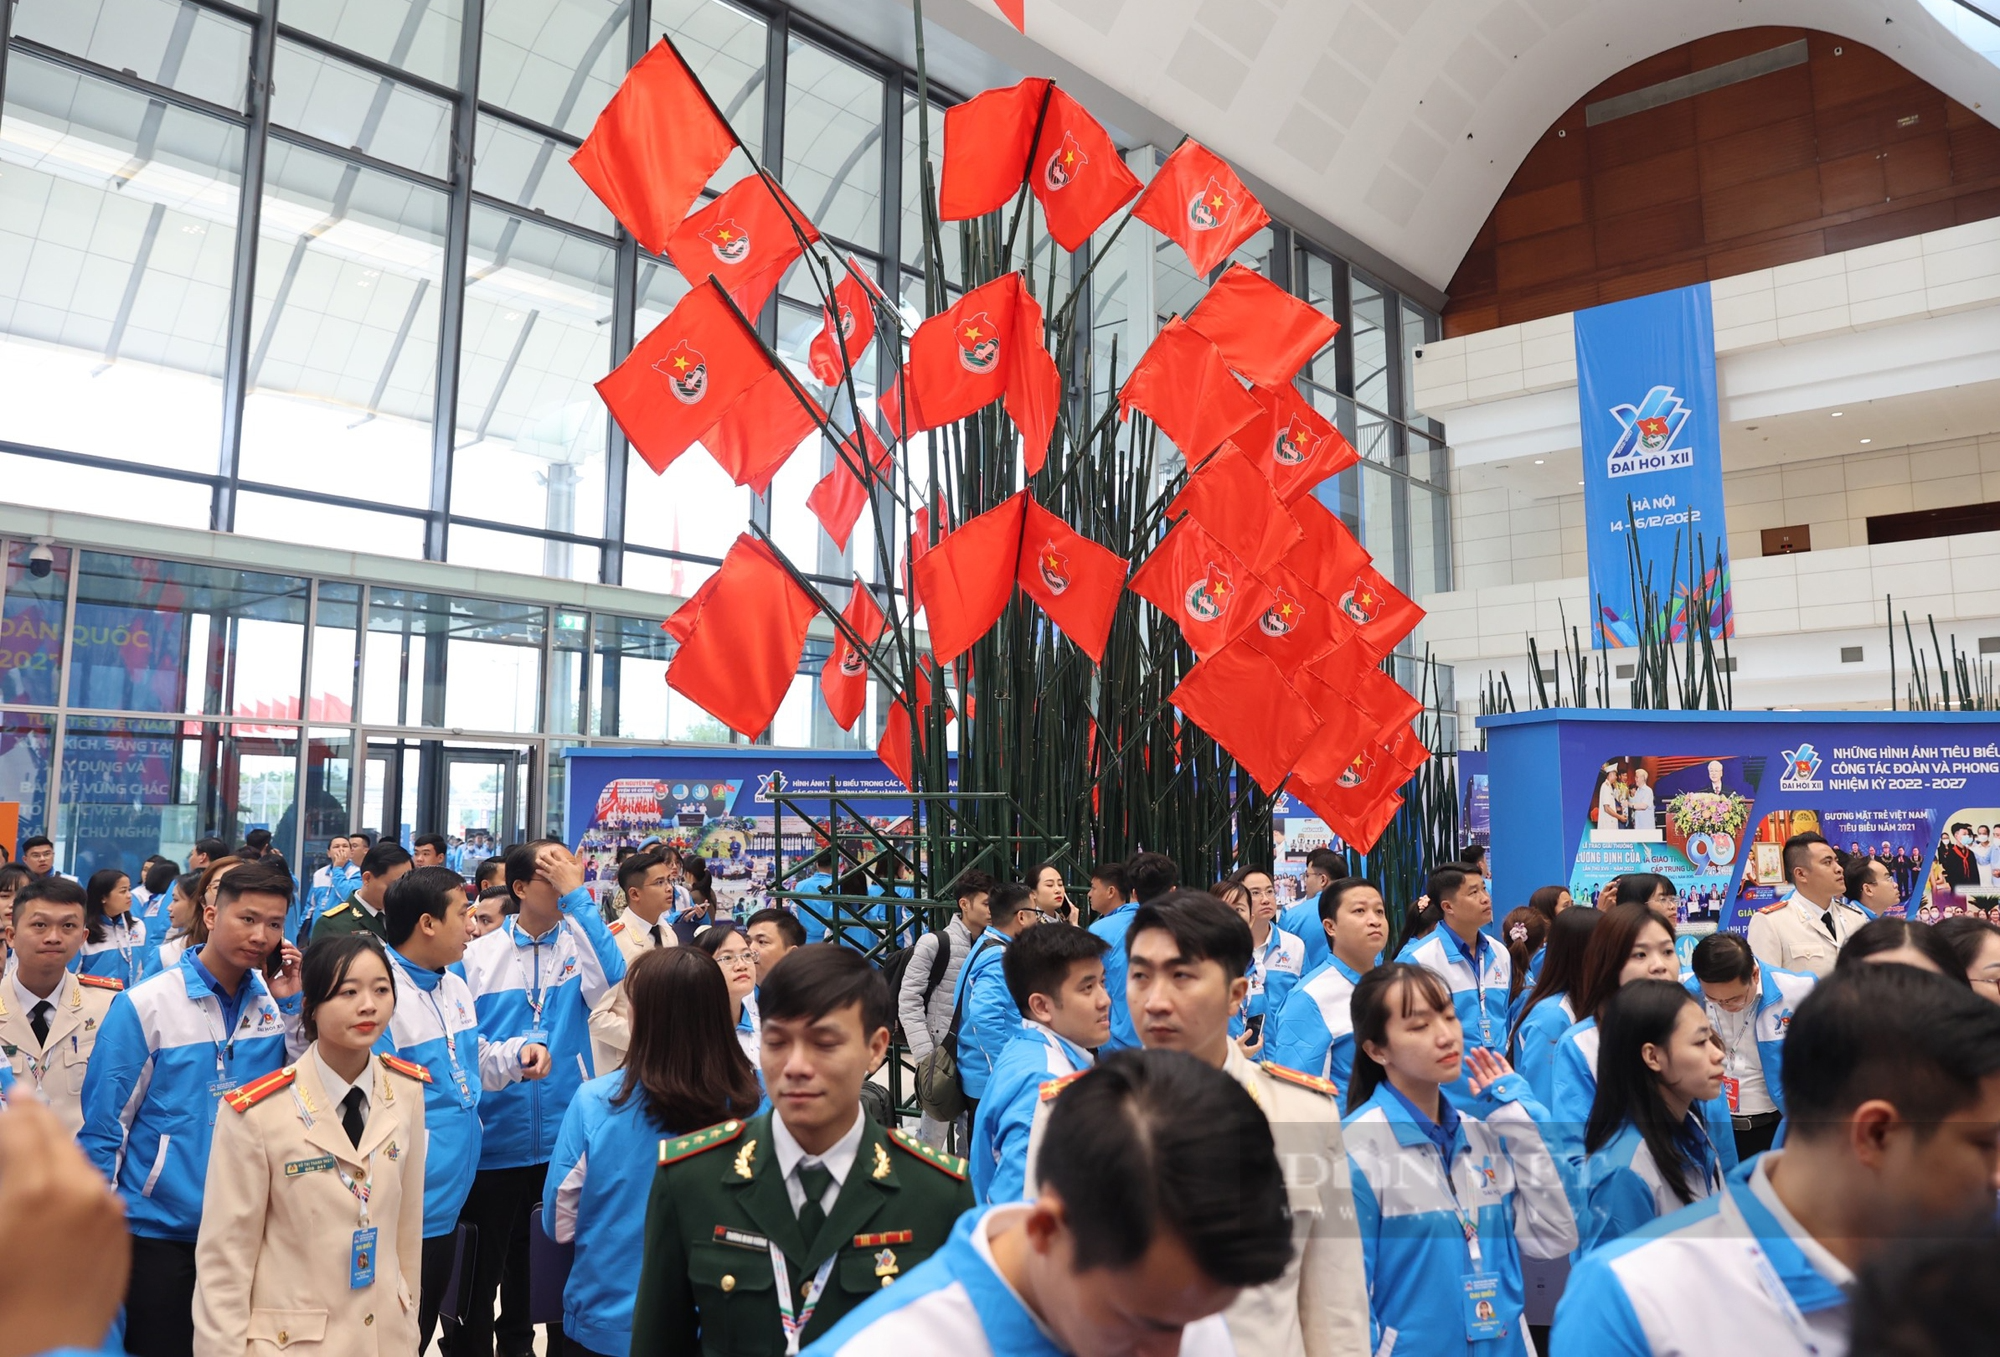 Hình ảnh khai mạc Đại hội đại biểu toàn quốc Đoàn TNCS Hồ Chí Minh lần thứ XII - Ảnh 8.